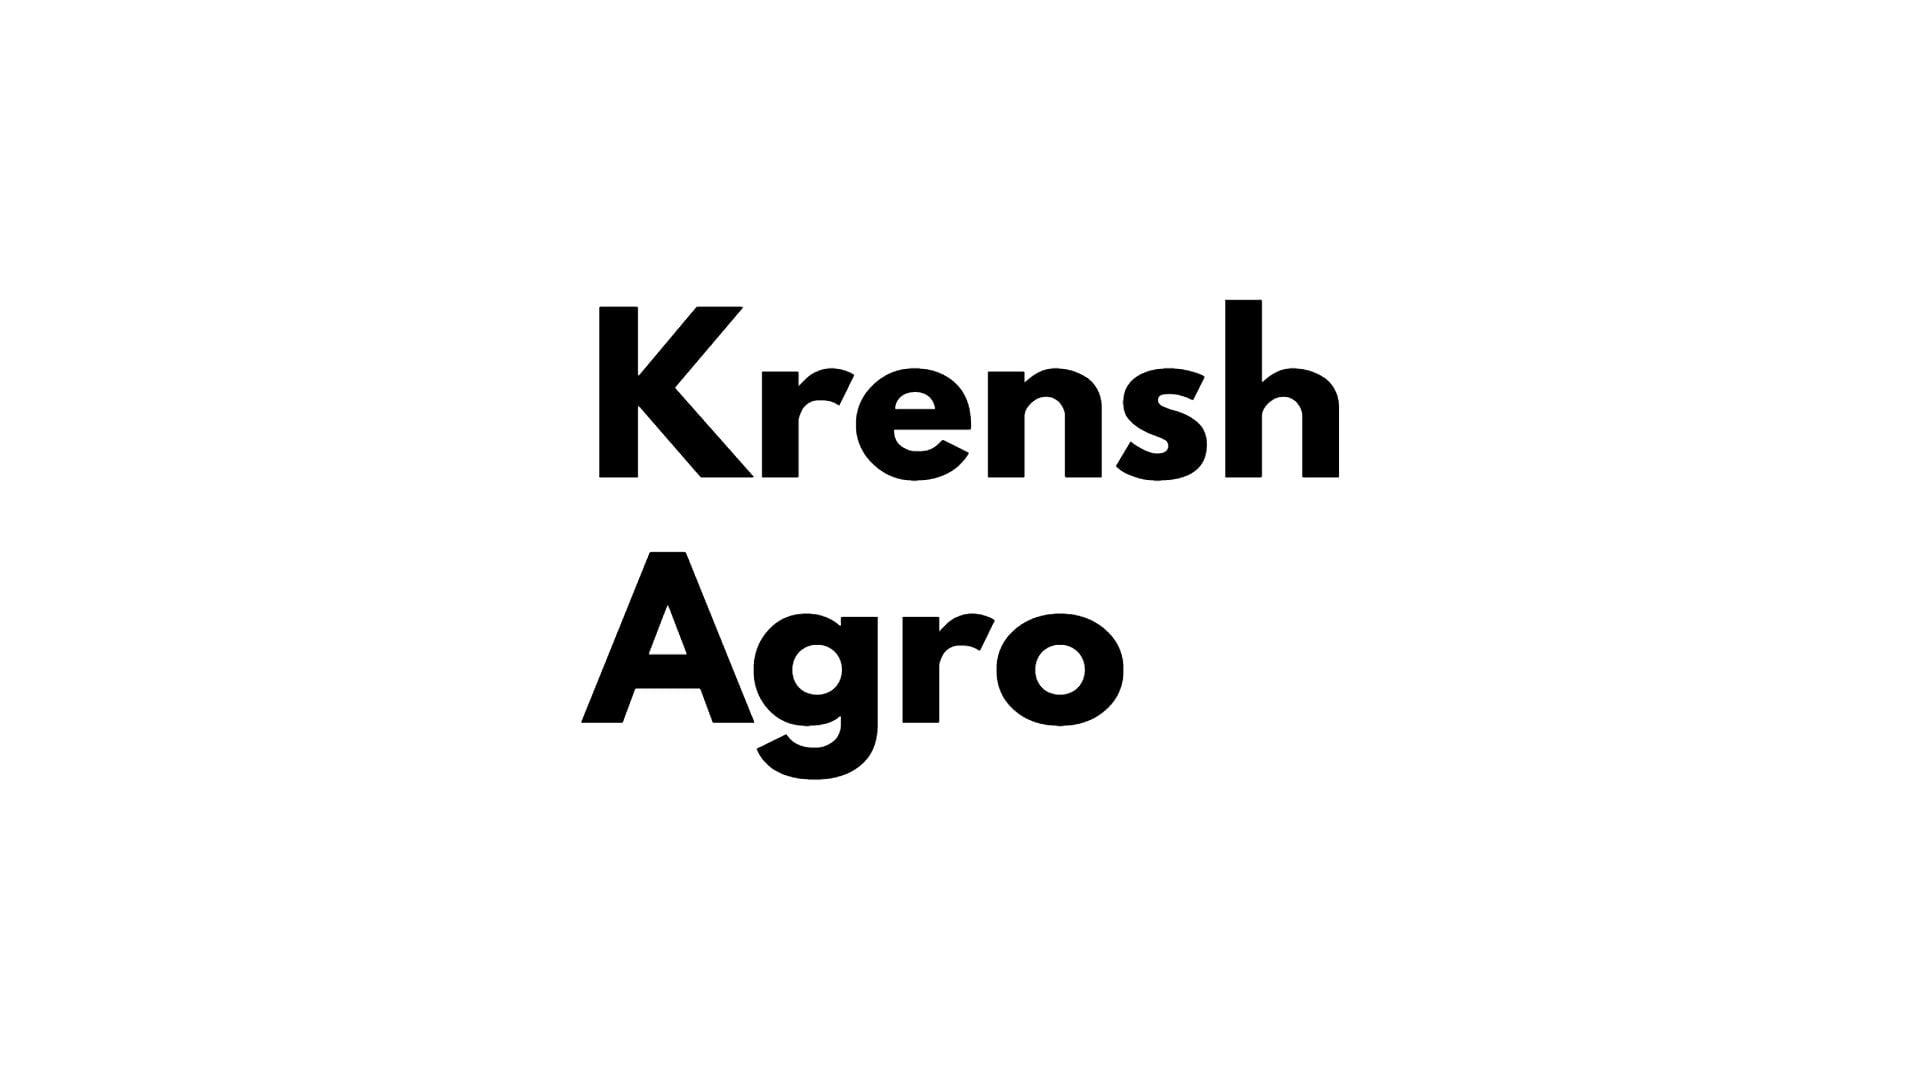 Krensh Agro logo